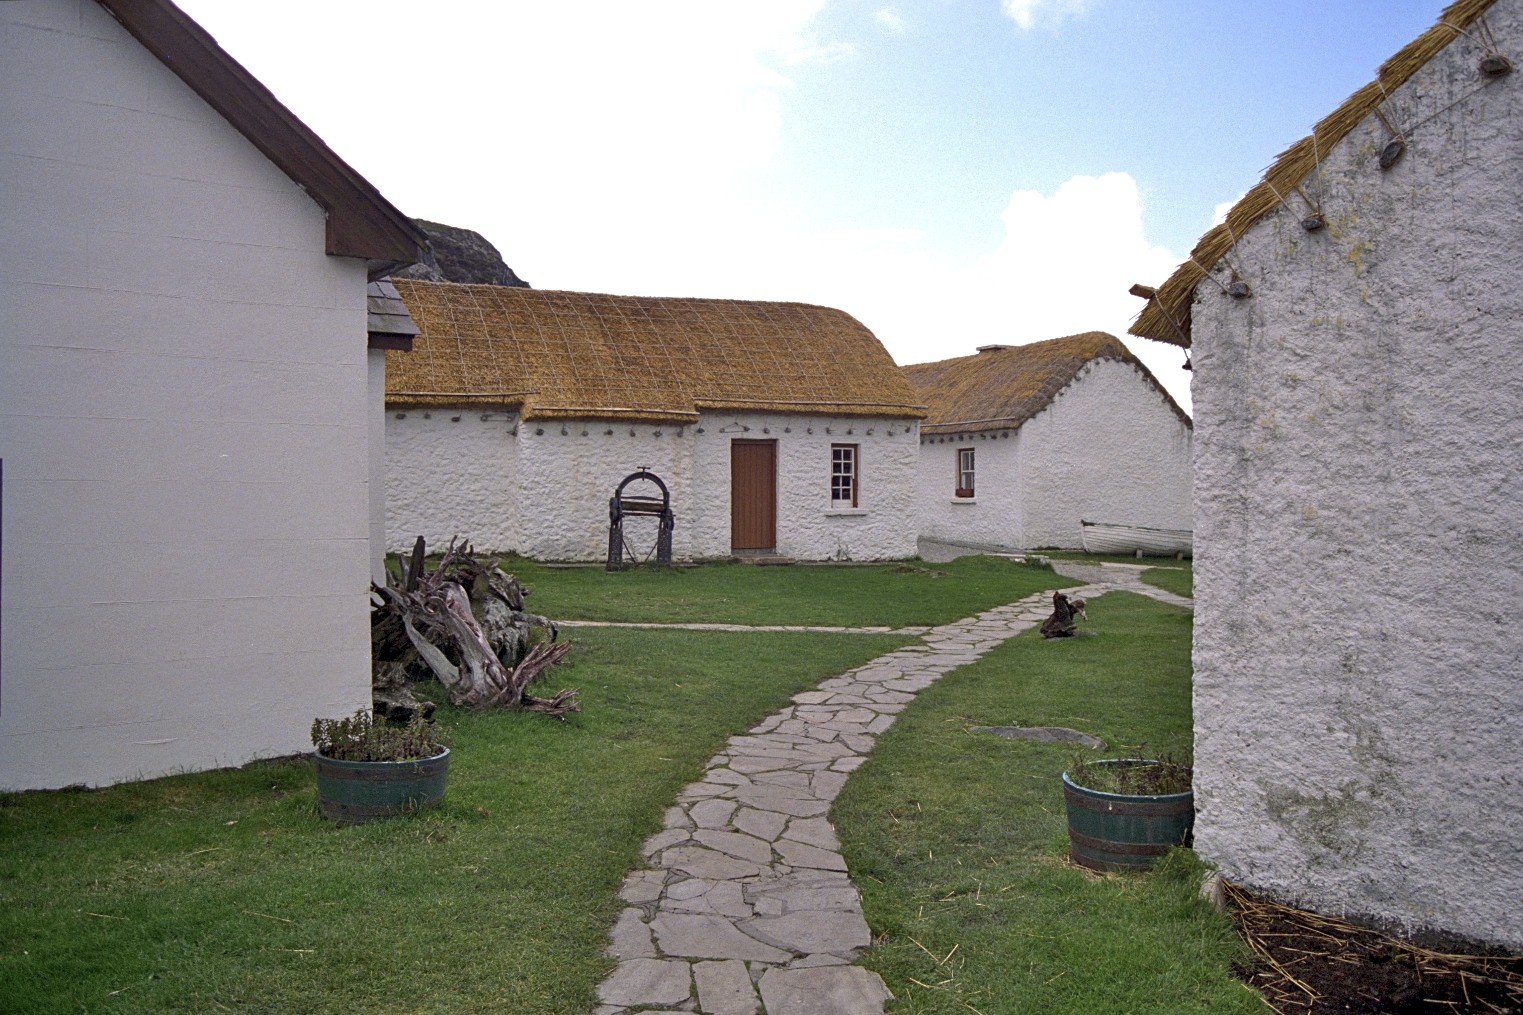 Glencolumbkille Folk Village, Írland